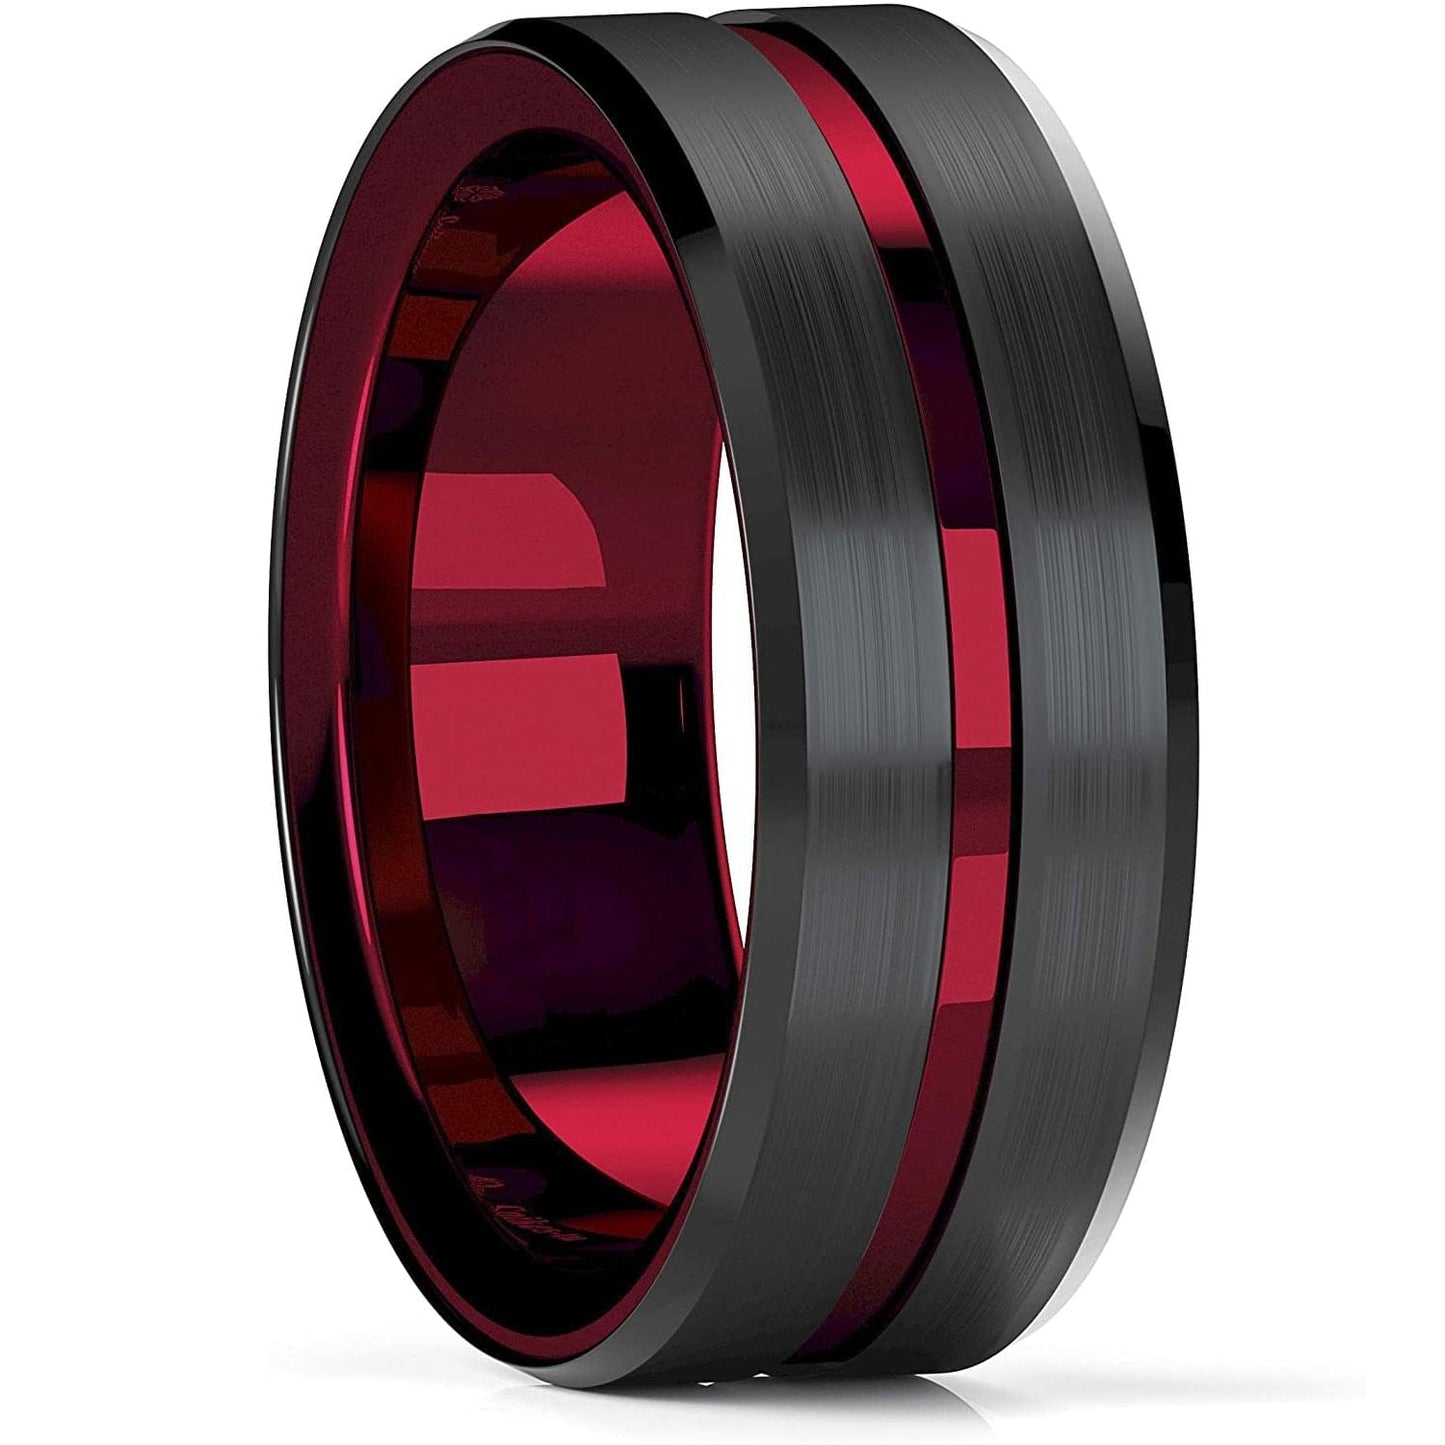 Rings steel/carbon